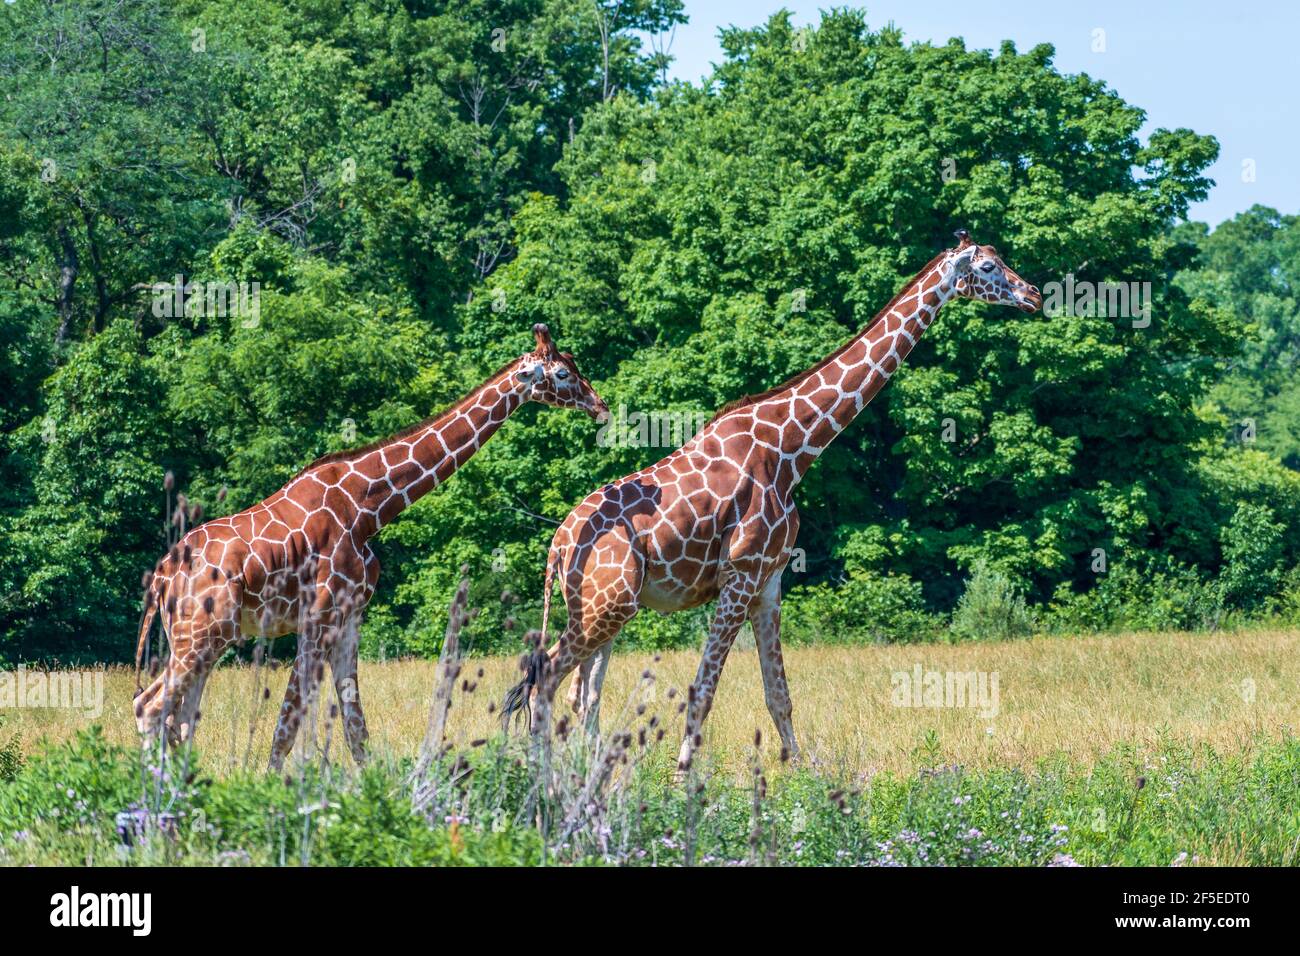 Sparato da parte di due giraffe che camminano nello spazio aperto circondato da alberi fitti. Foto Stock